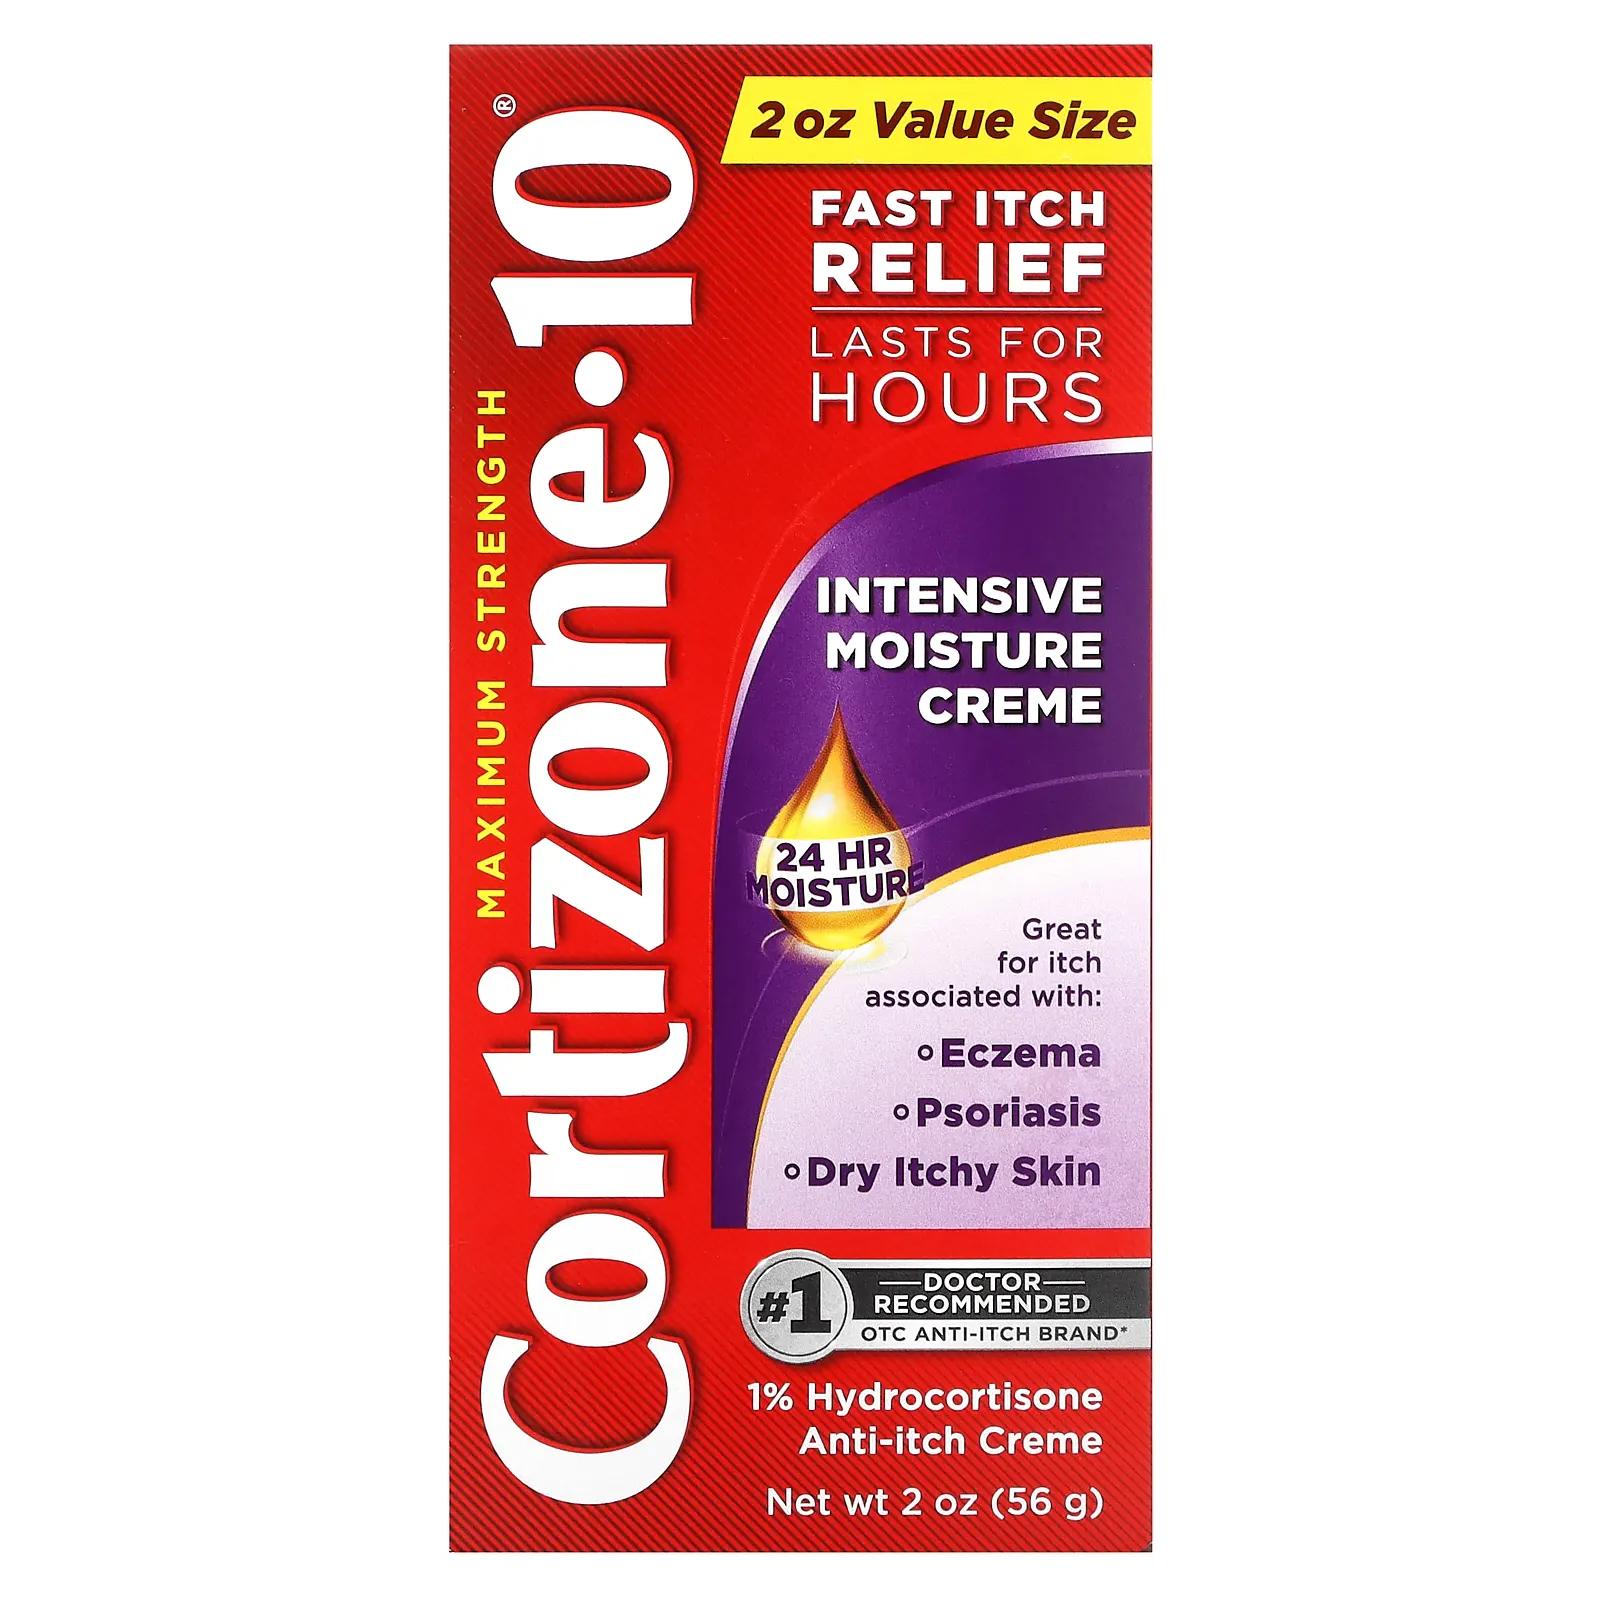 Cortizone 10 Maximum Strength интенсивный увлажняющий крем 56 г (2 унции) cortizone 10 maximum strength ночной крем 28 г 1 унция